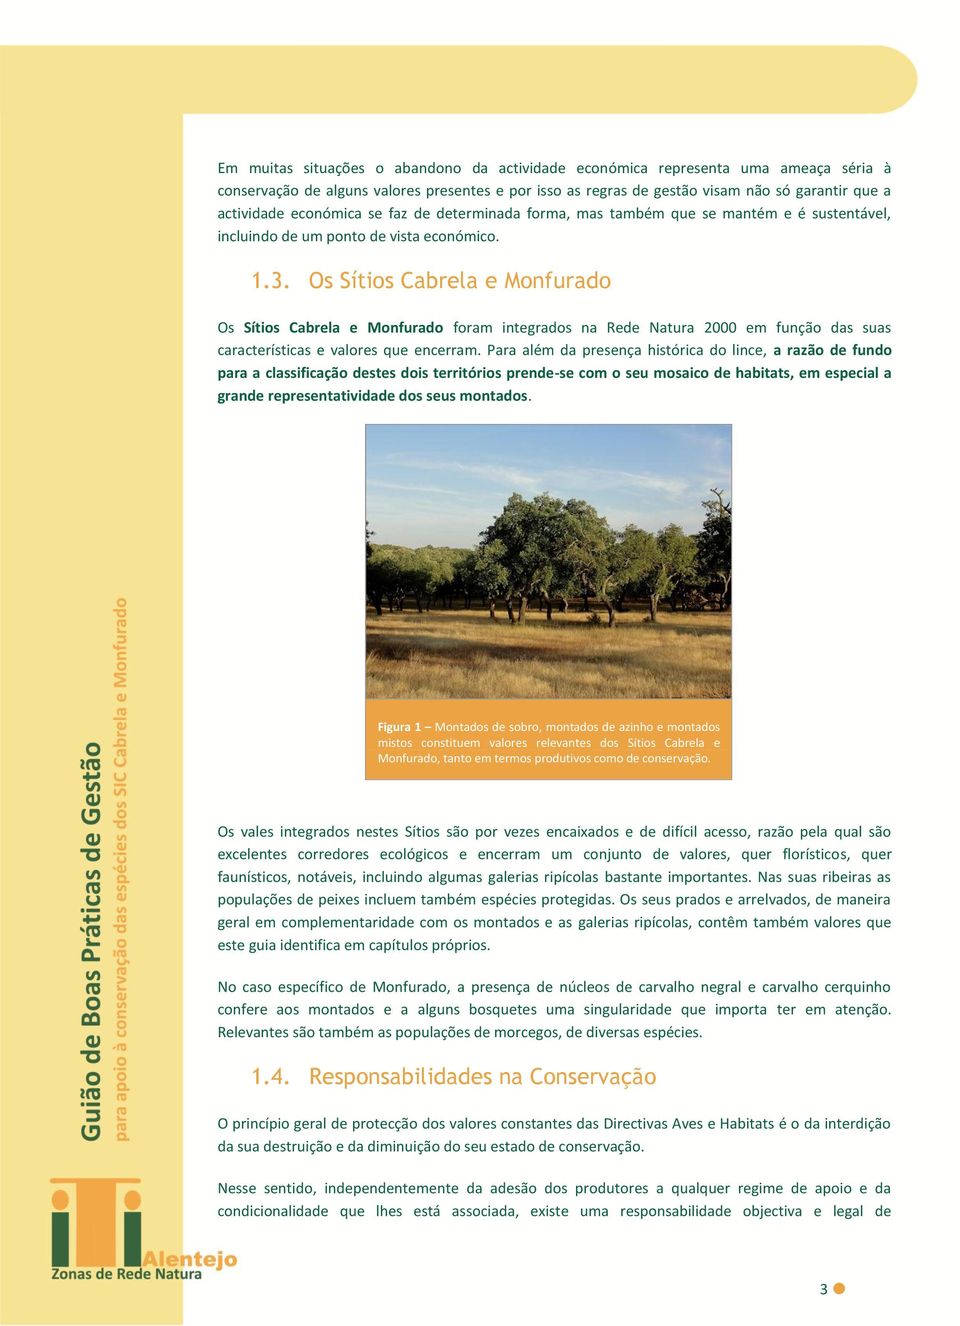 Os Sítios Cabrela e Monfurado Os Sítios Cabrela e Monfurado foram integrados na Rede Natura 2000 em função das suas características e valores que encerram.